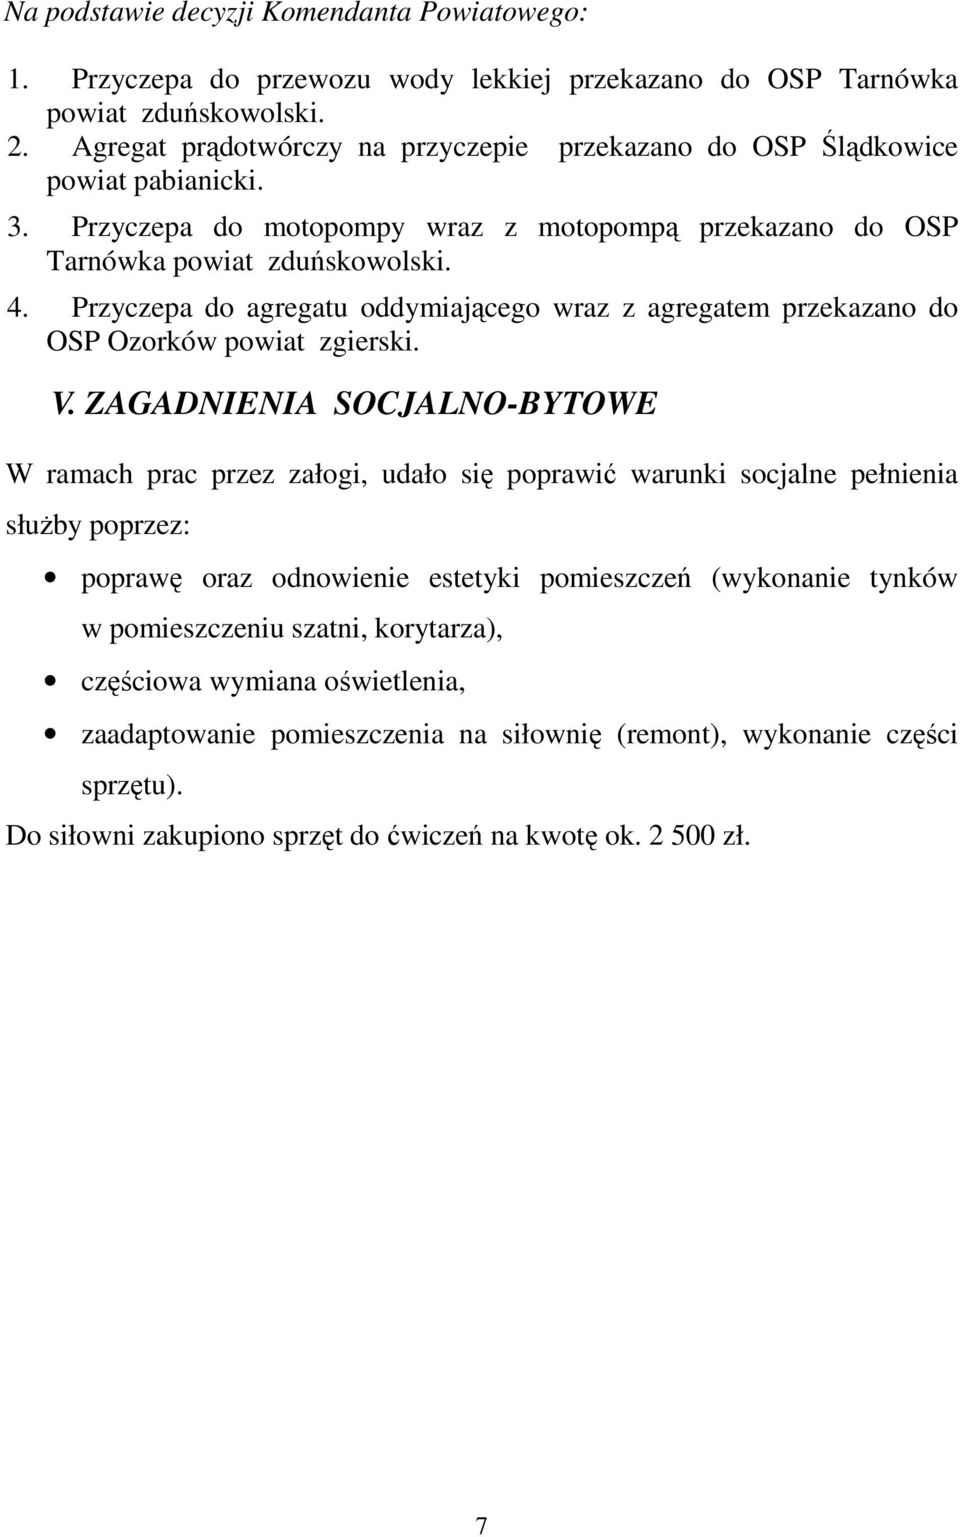 Przyczepa do agregatu oddymiającego wraz z agregatem przekazano do OSP Ozorków powiat zgierski. V.